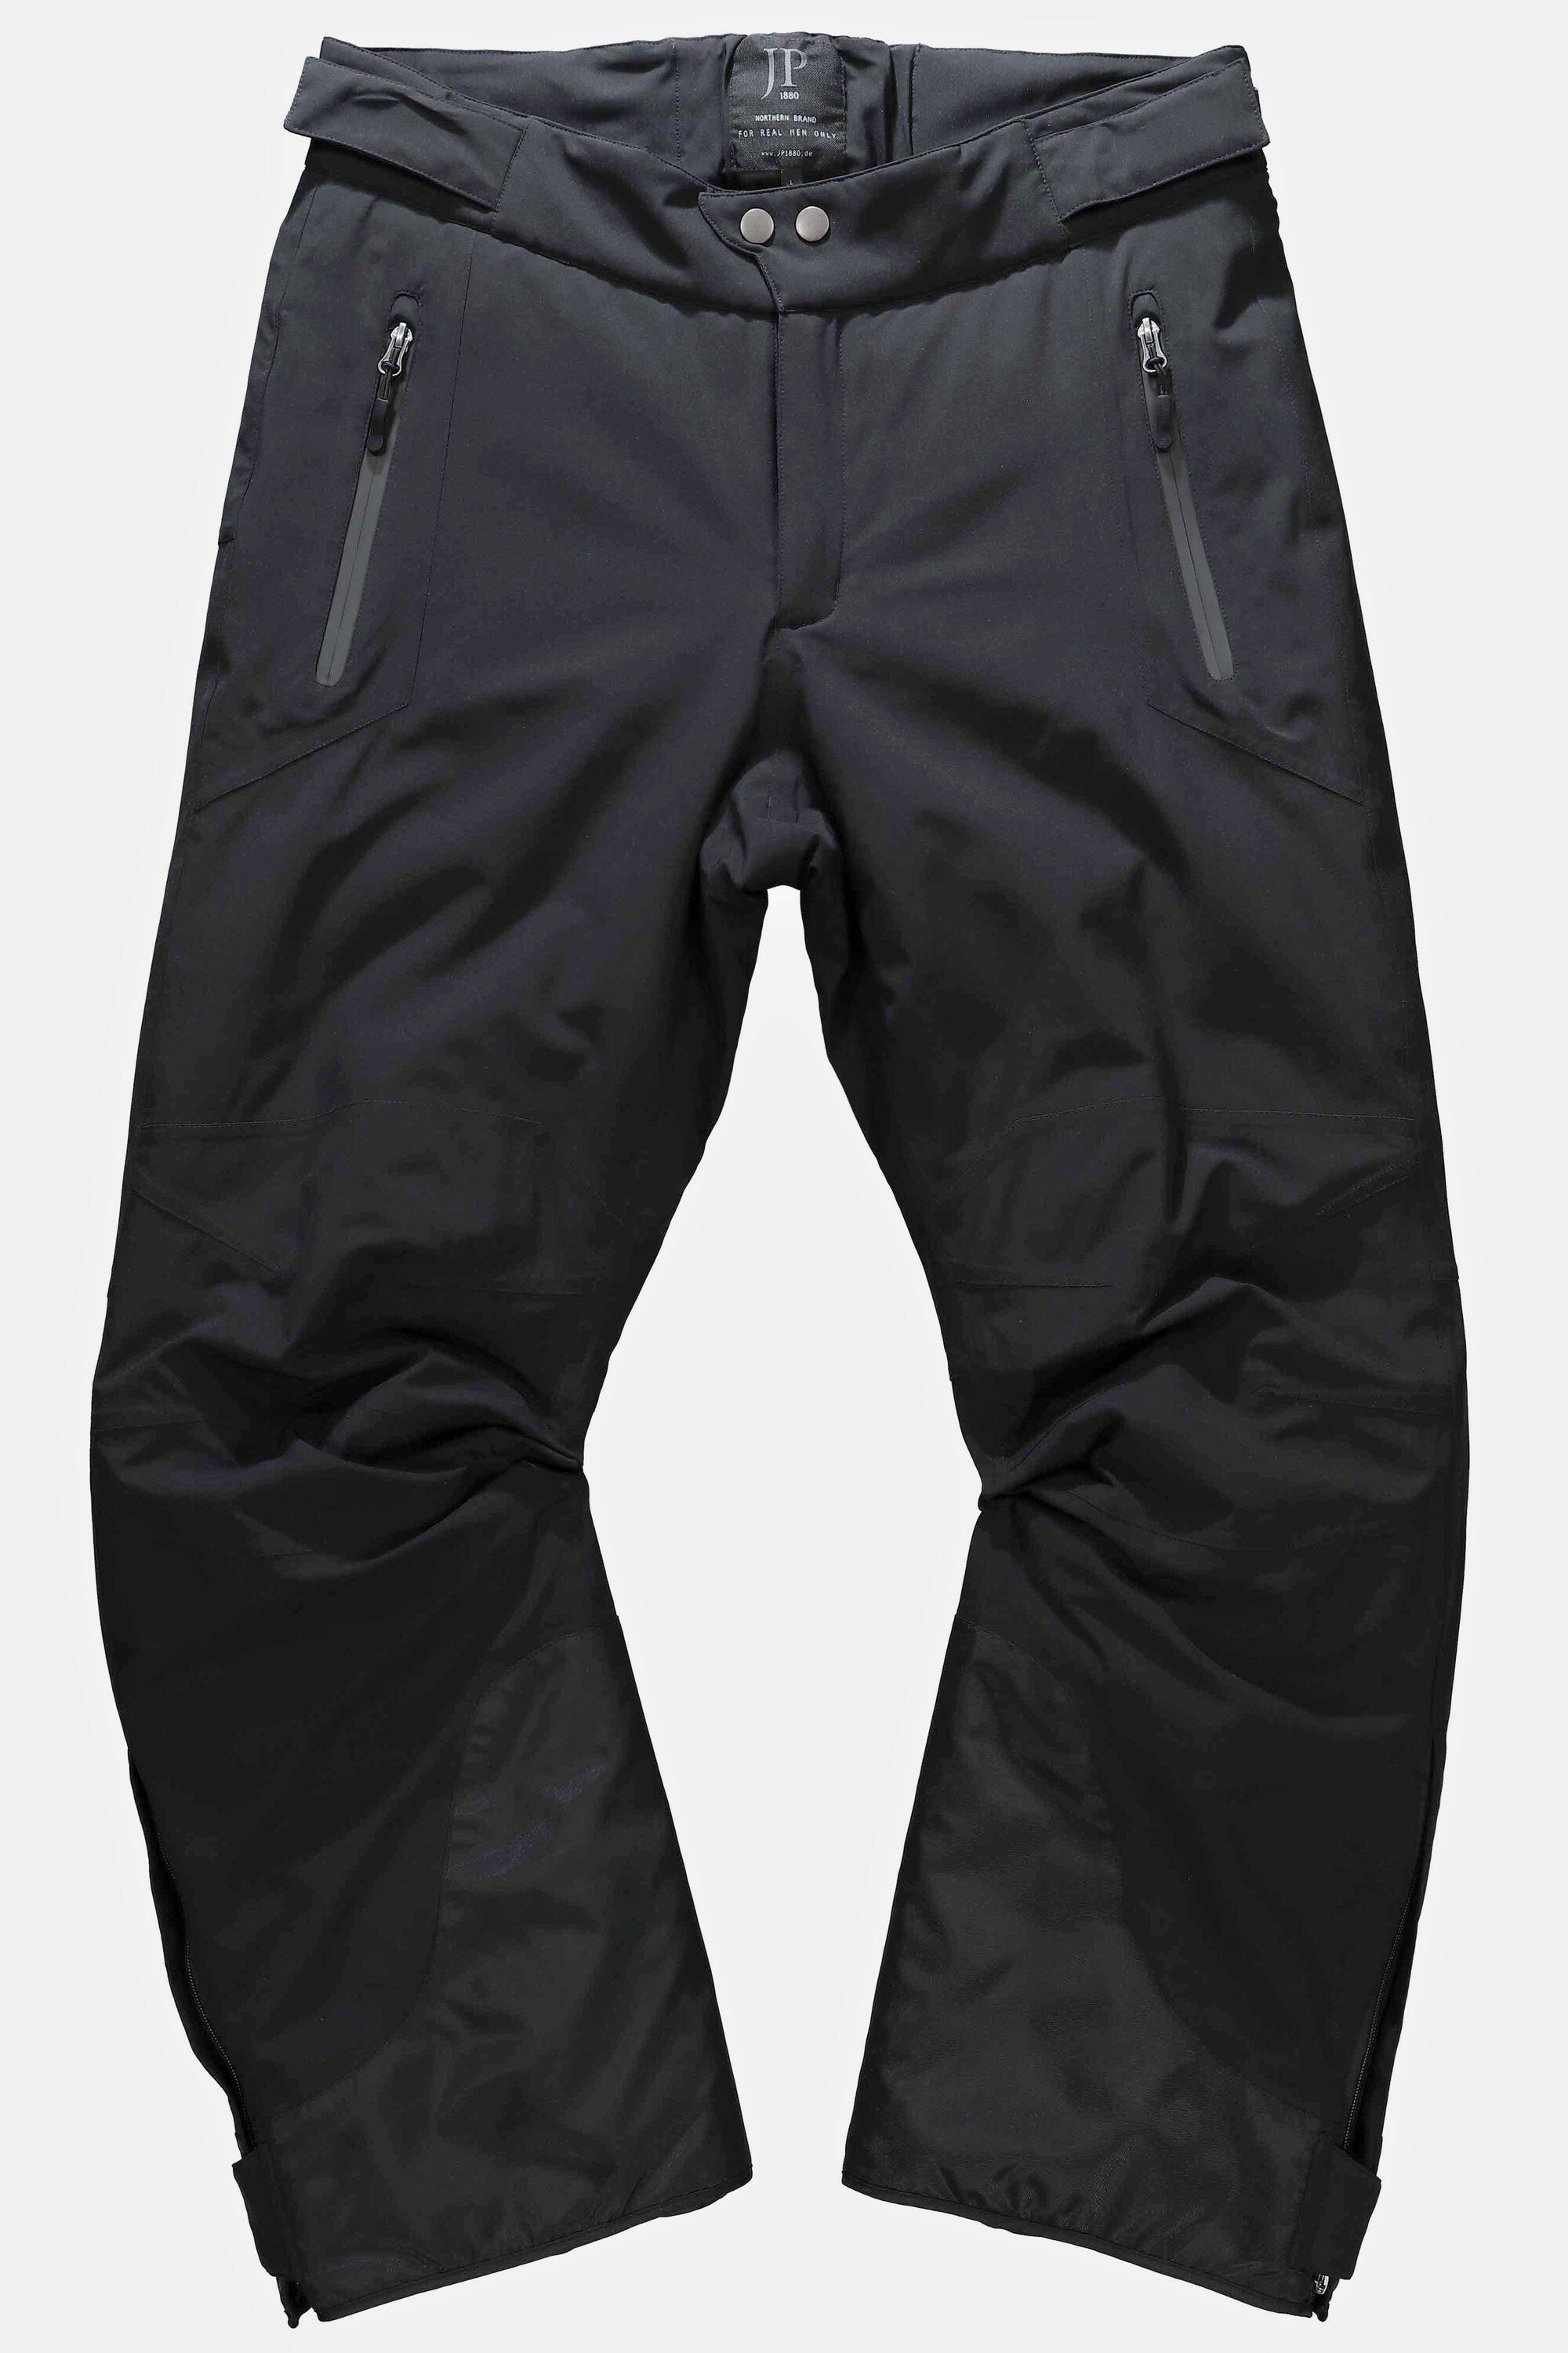 JP1880 Skihose Skihose Bauchfit Funktions-Qualität Skiwear schwarz